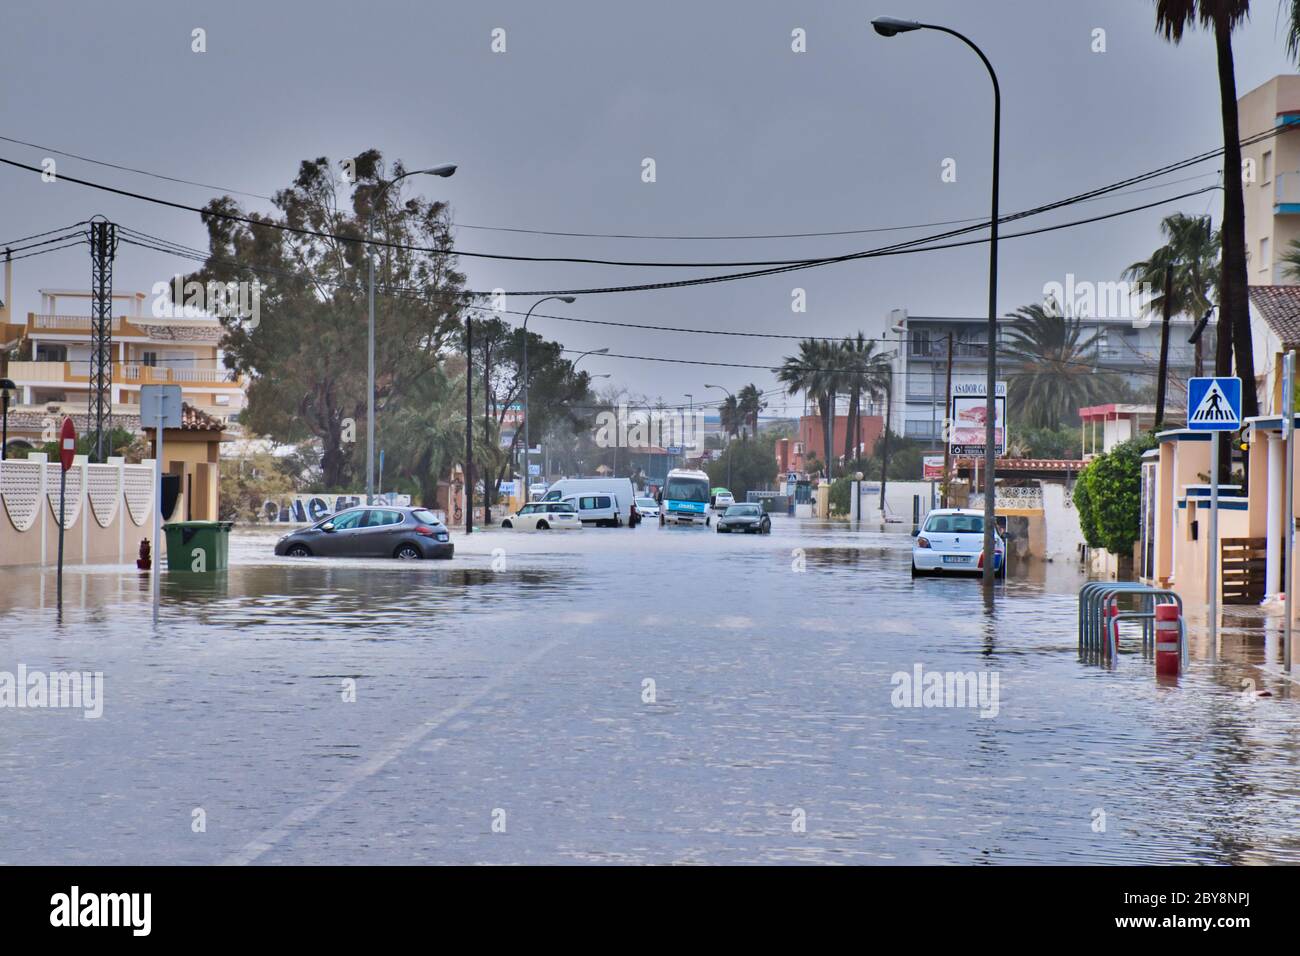 Dénia, Alicante, Spanien 01/20/20 Sturm Gloria überflutet die Straßen mit Meerwasser. Gestrandete Autos und Busse werden im tiefen Wasser aufgegeben. Naturereignis Stockfoto